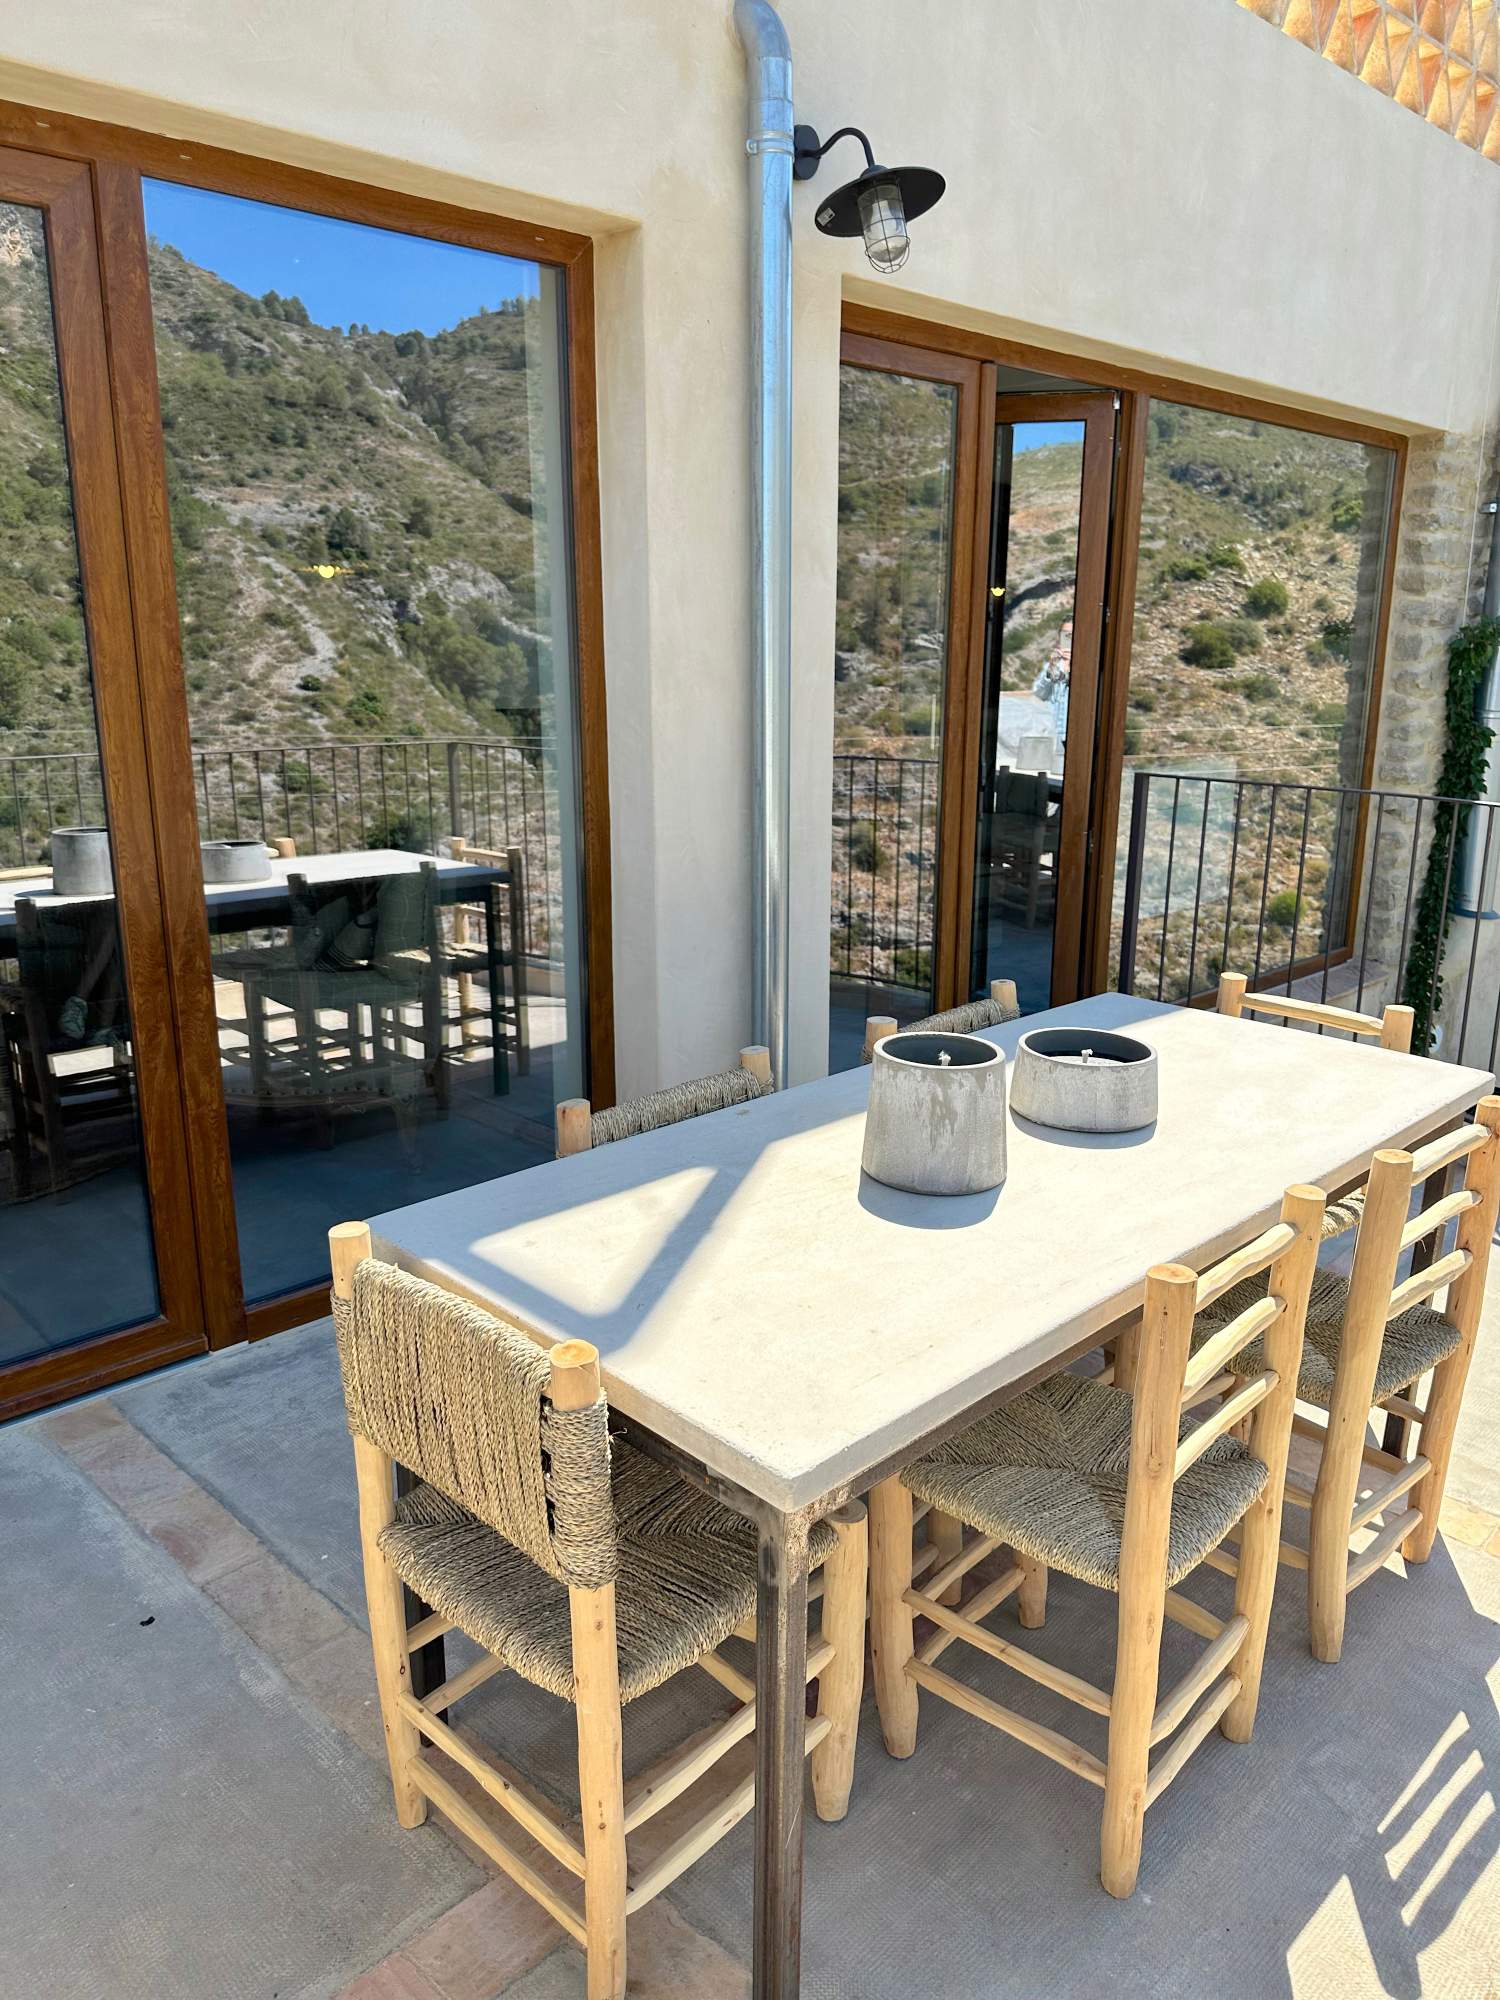 Comedor en la terraza con vistas a la montaña.